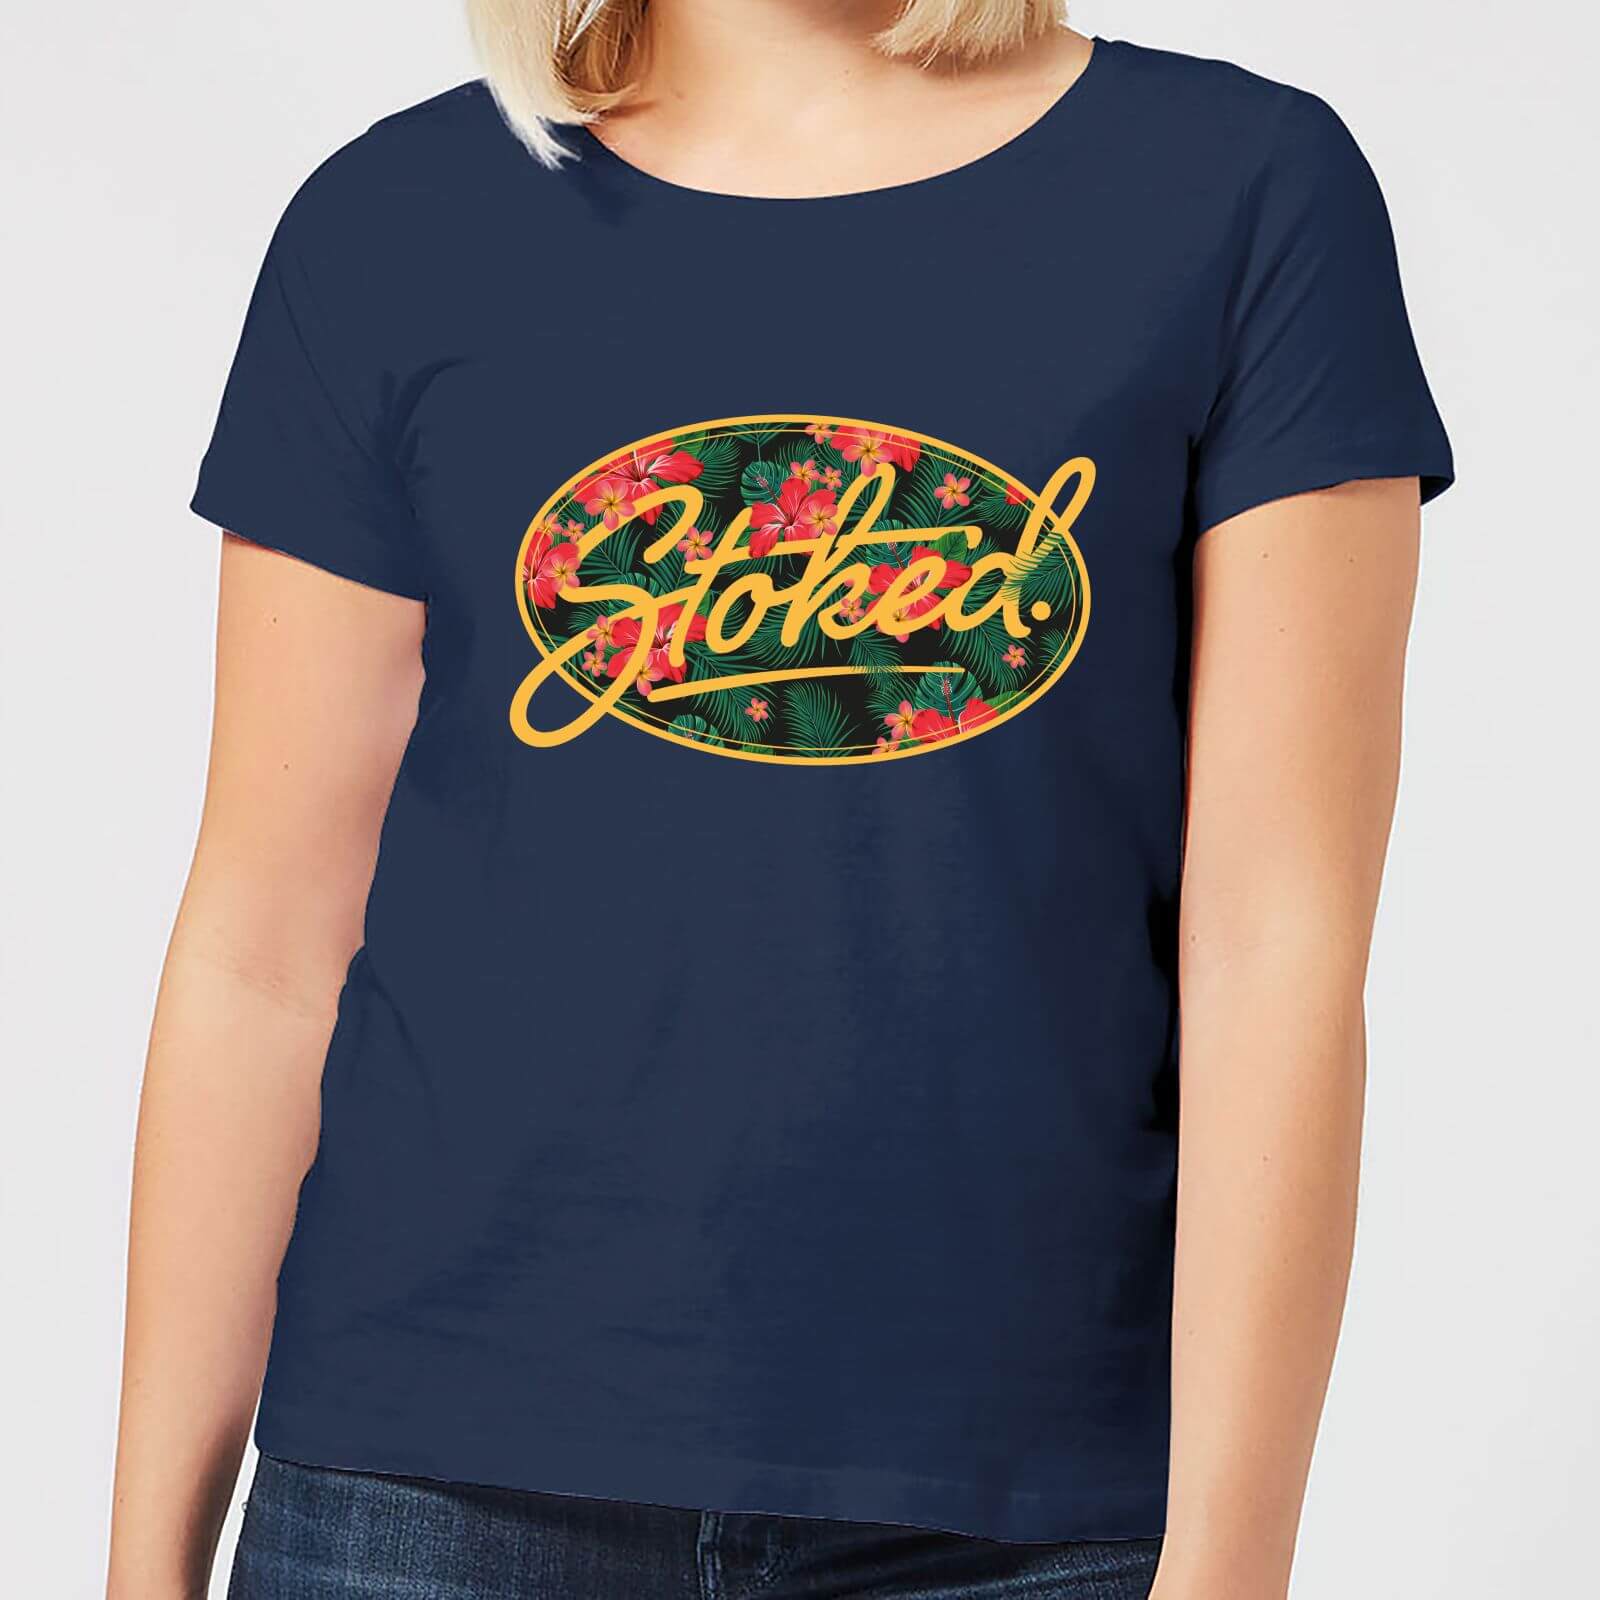 Stoked Women's T-Shirt - Navy - S - Navy